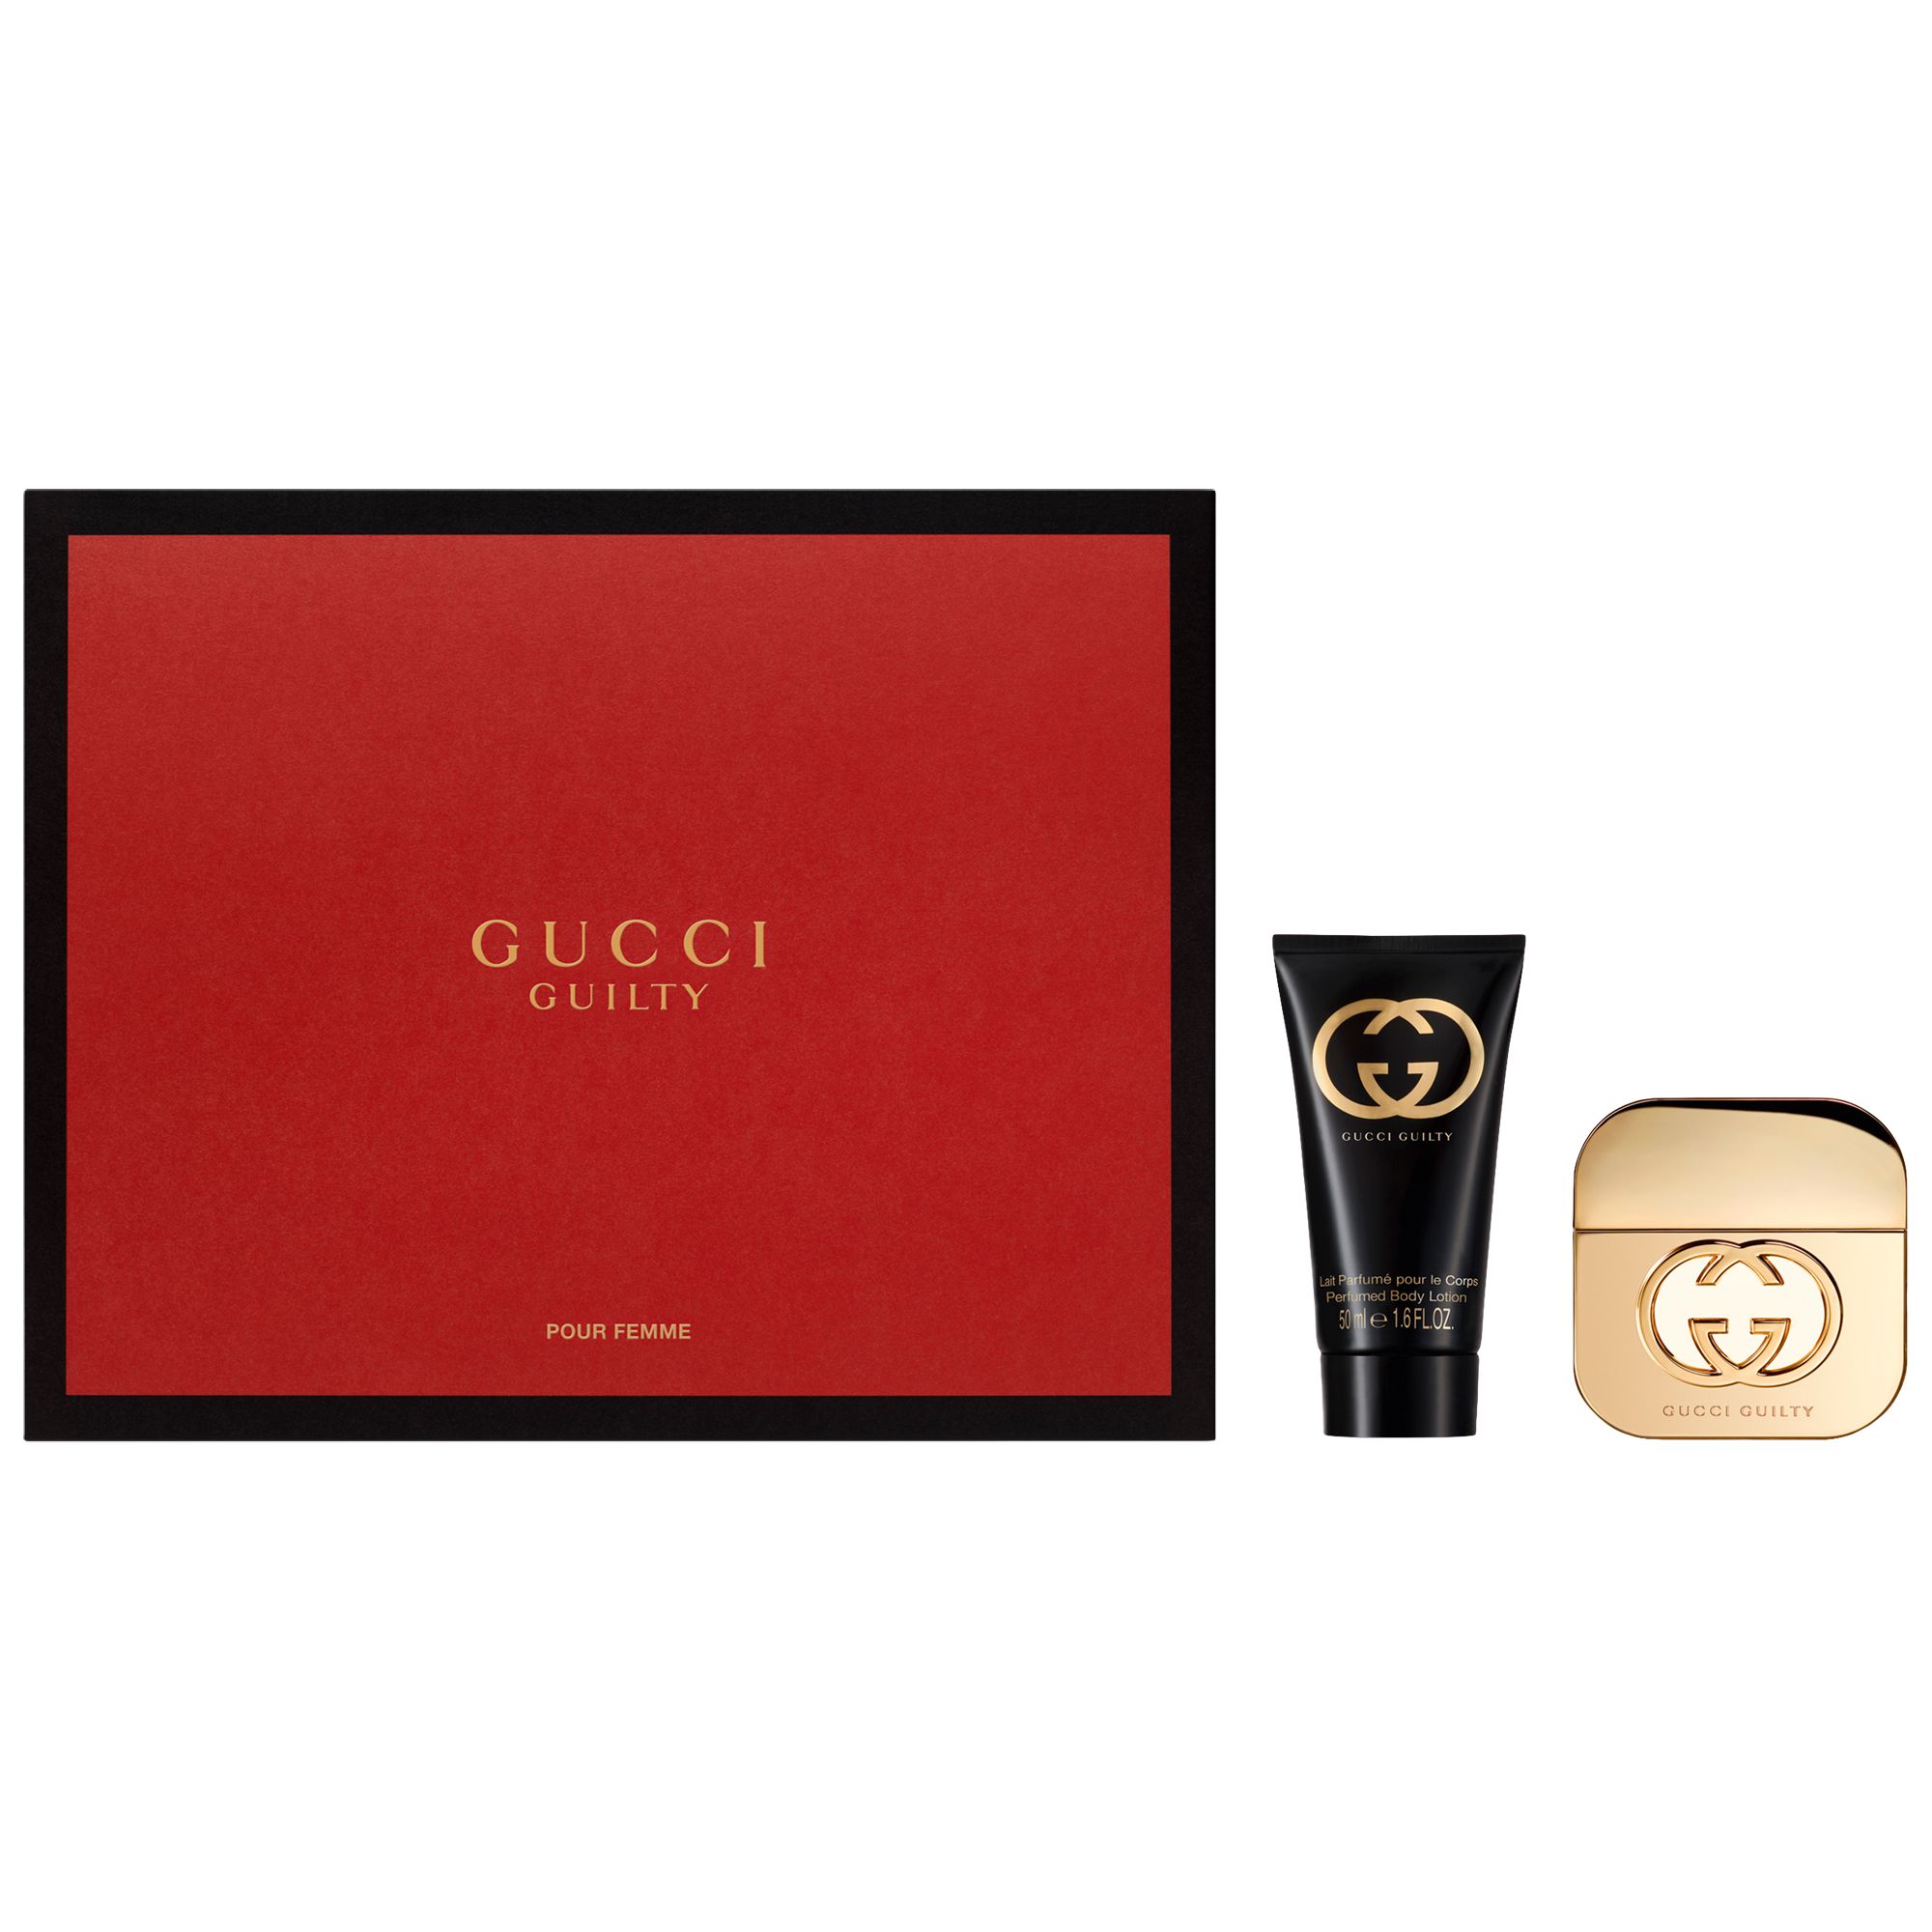 Gucci Guilty 30ml Eau de Toilette Fragrance Gift Set at